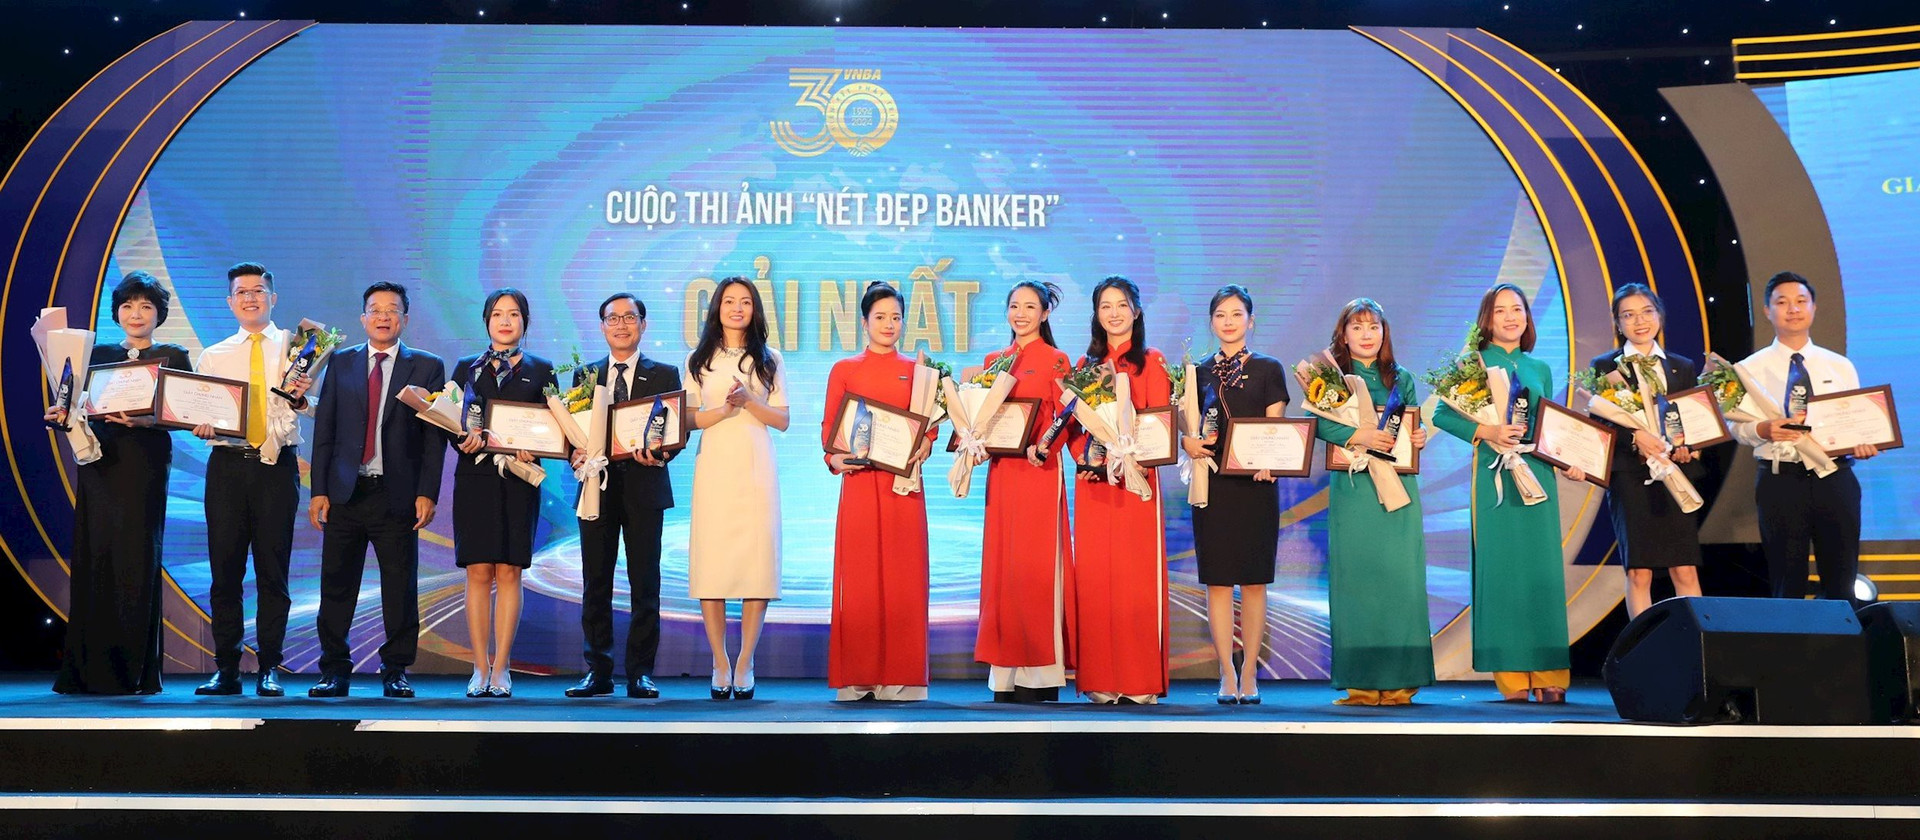 Ban tổ chức và các đội thi nhận giải thưởng cuộc thi Nét đẹp Banker cùng chụp ảnh lưu niệm tập thể